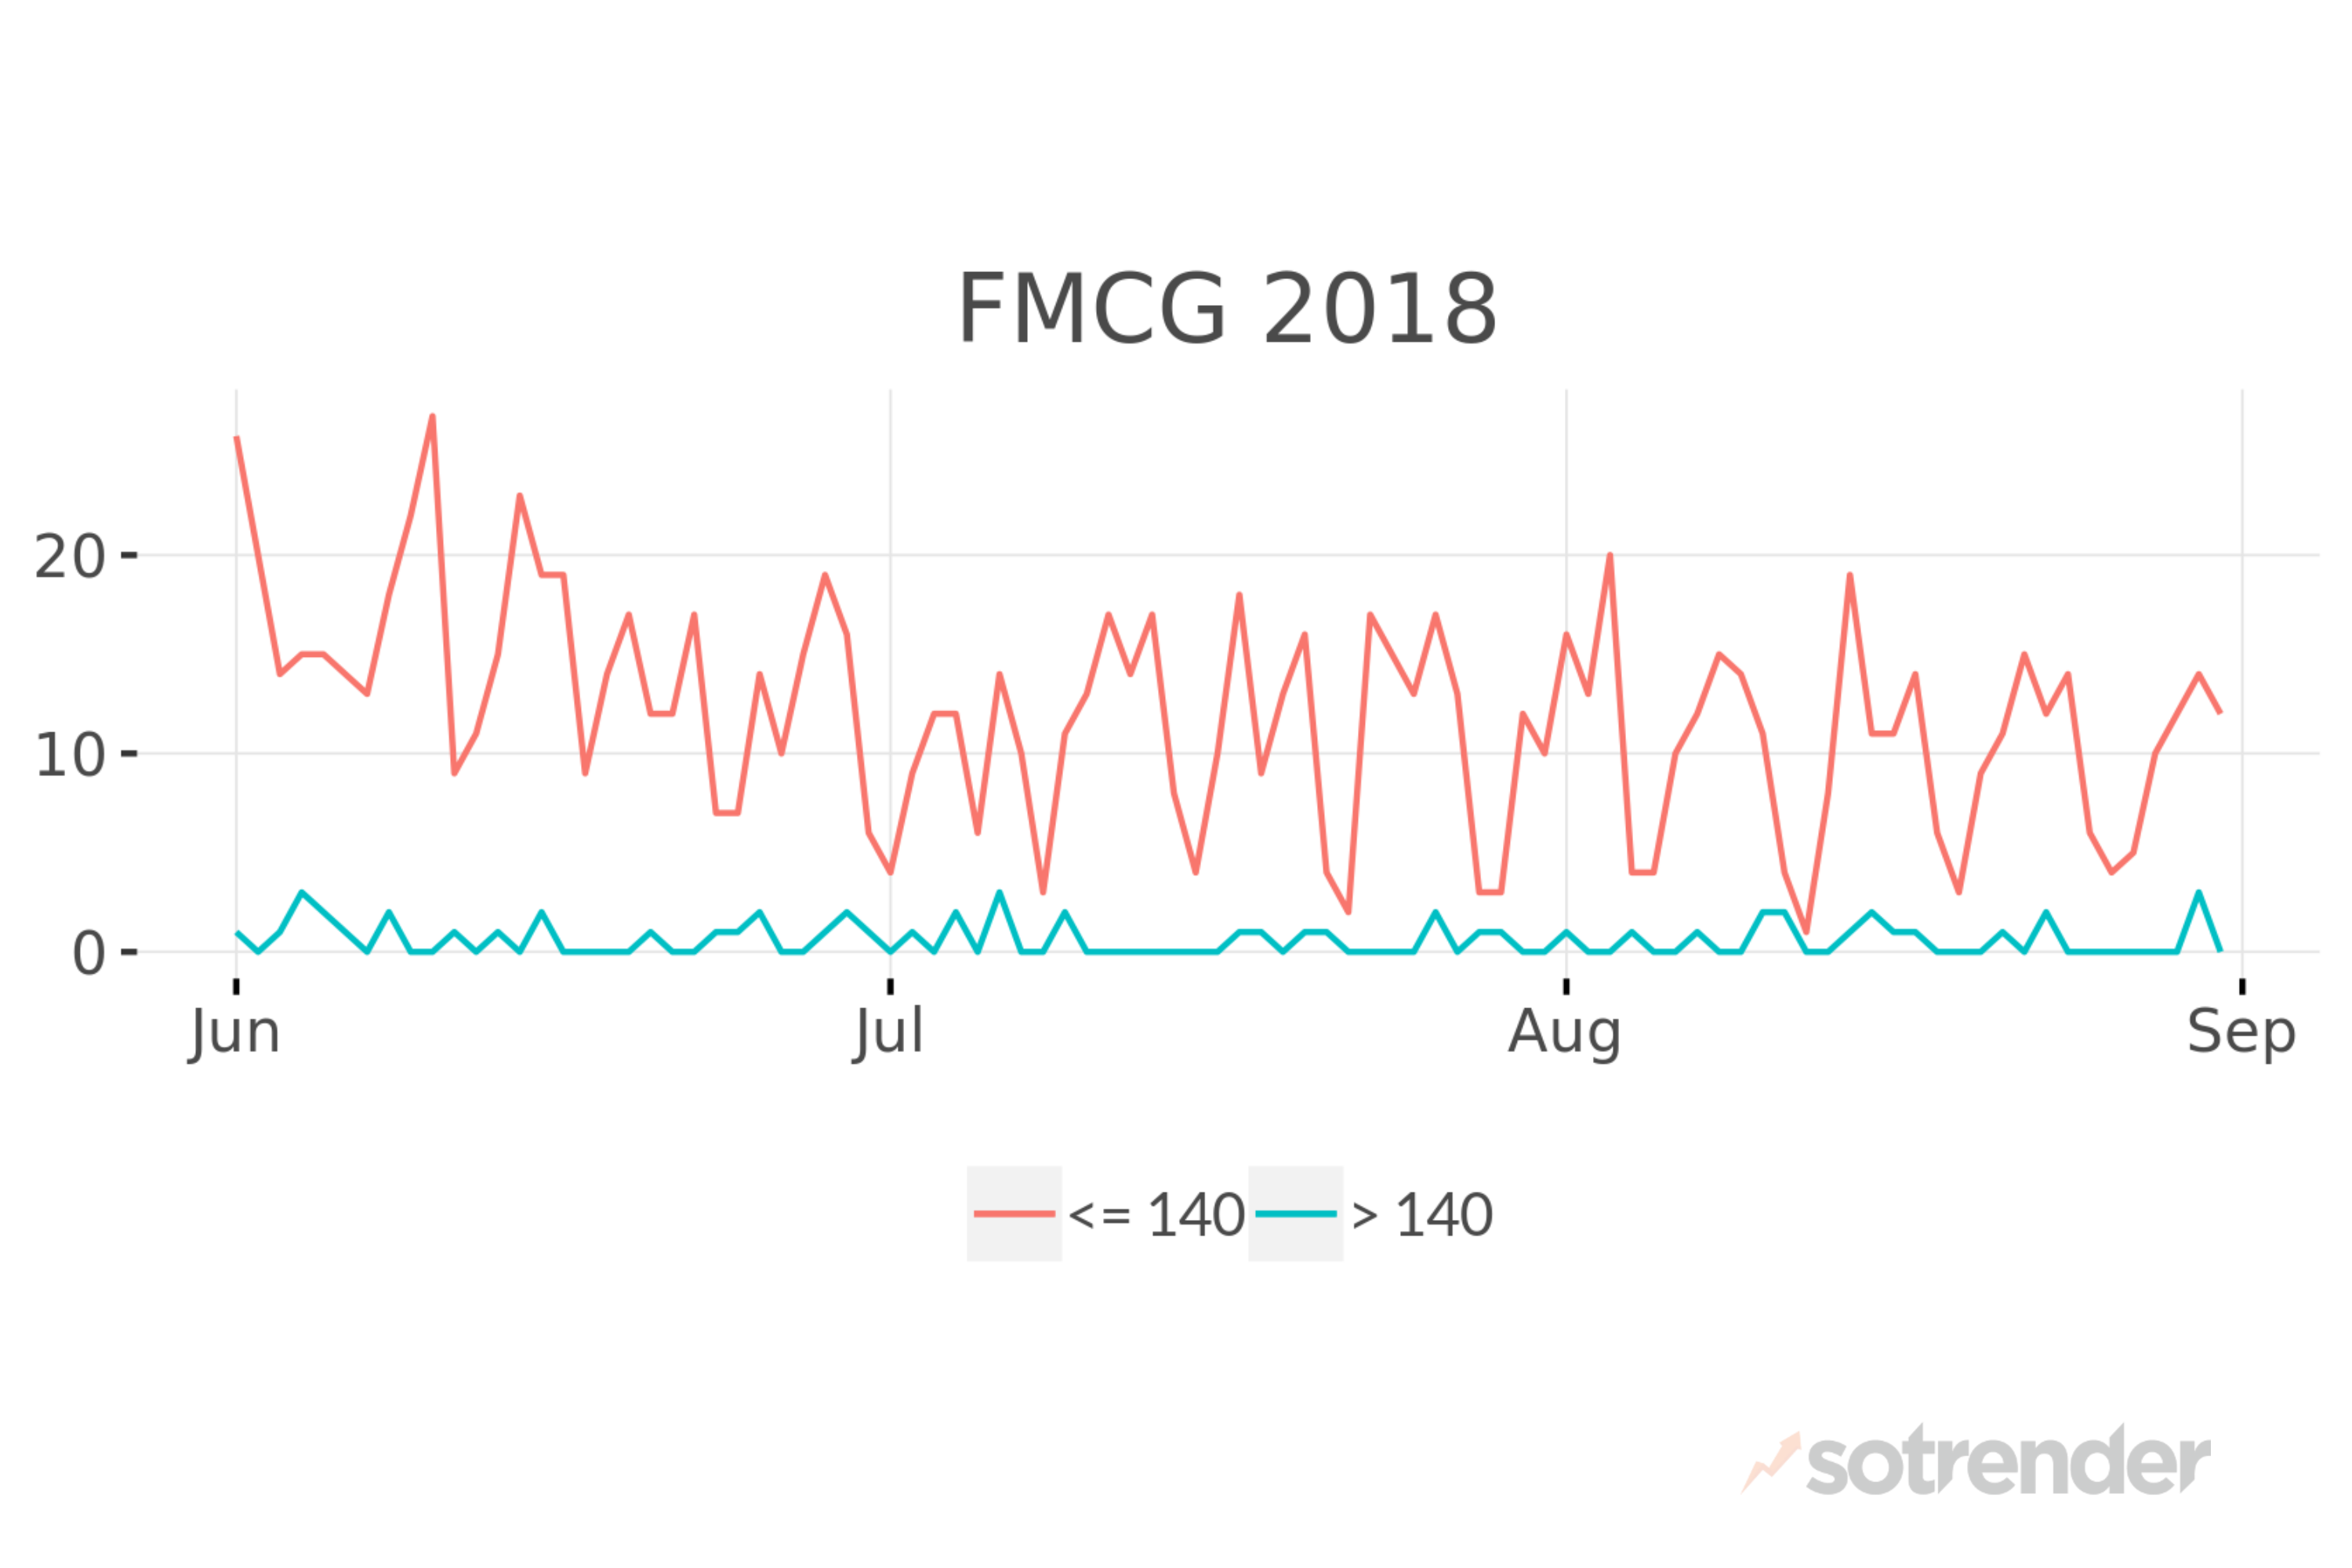 FMCG on Twitter in 2018